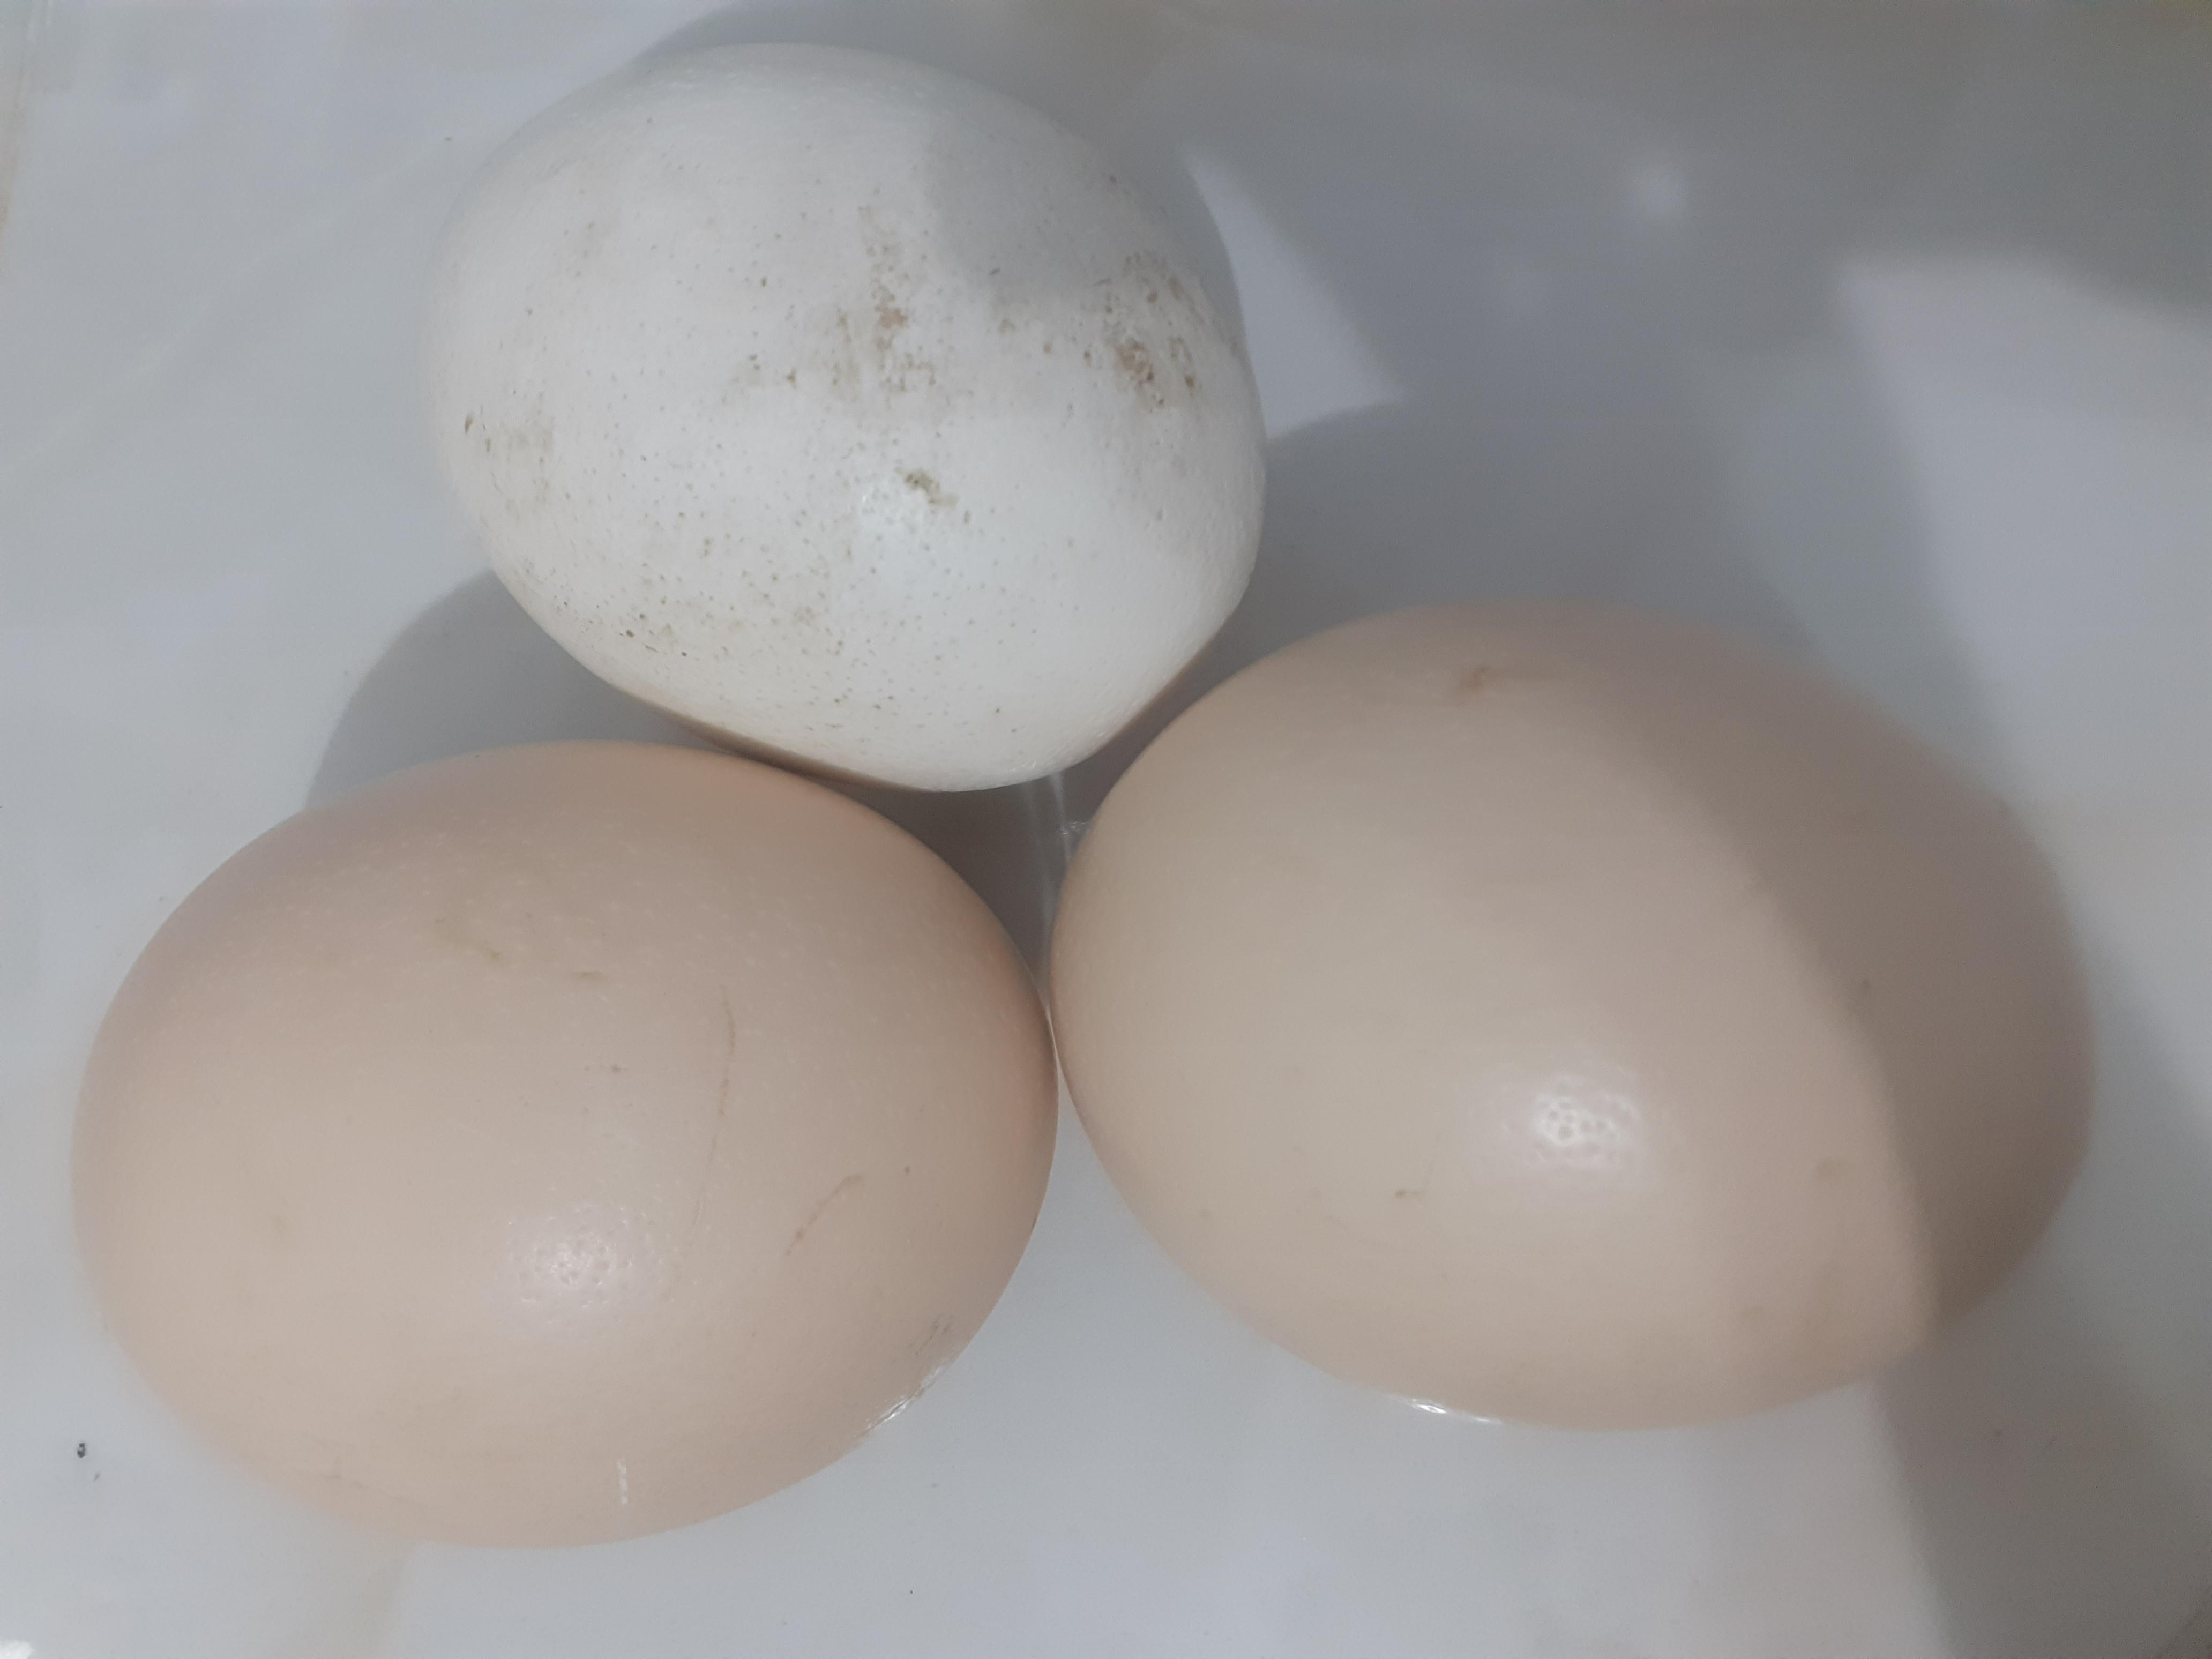 Malatya Yazıhan Satılık Deve Kuşu yumurtası